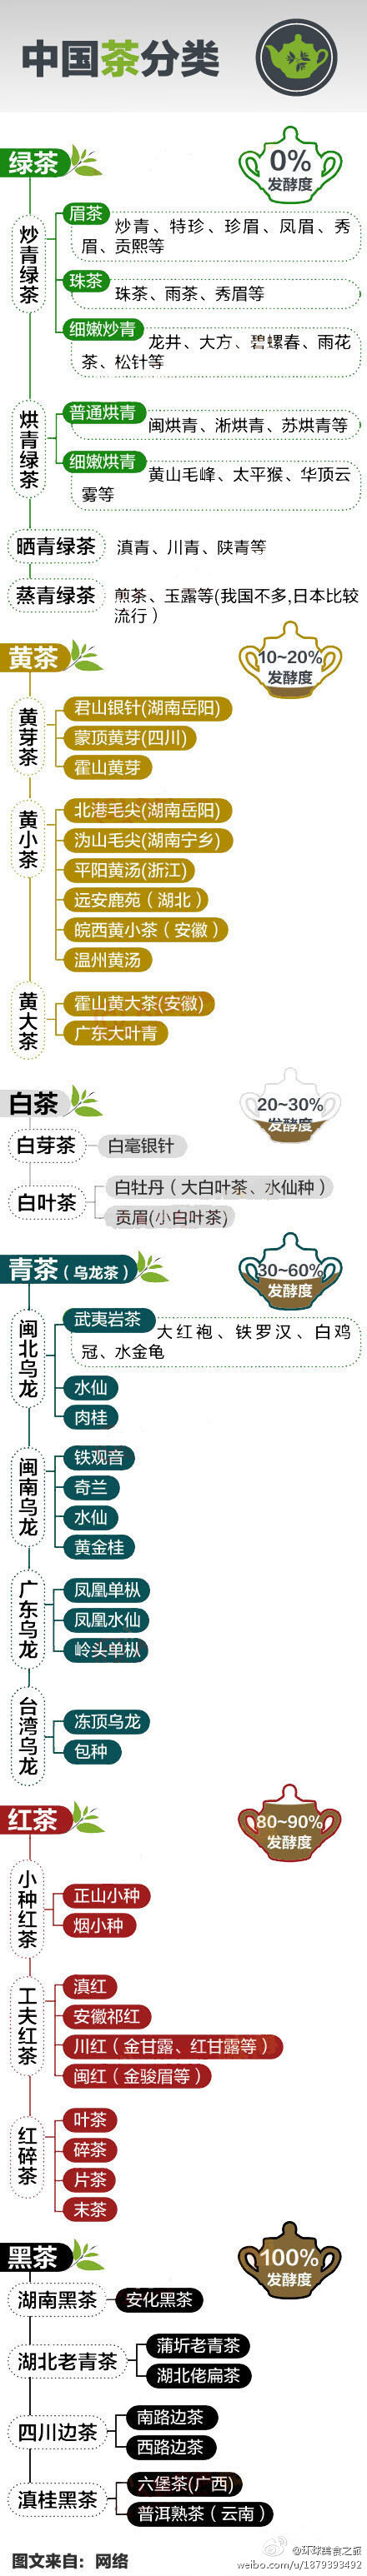 【一张图告诉你中国茶的分类】绿茶、黄茶、白茶、青茶、红茶、黑茶……名目繁多，用一张图告诉你中国茶的分类。